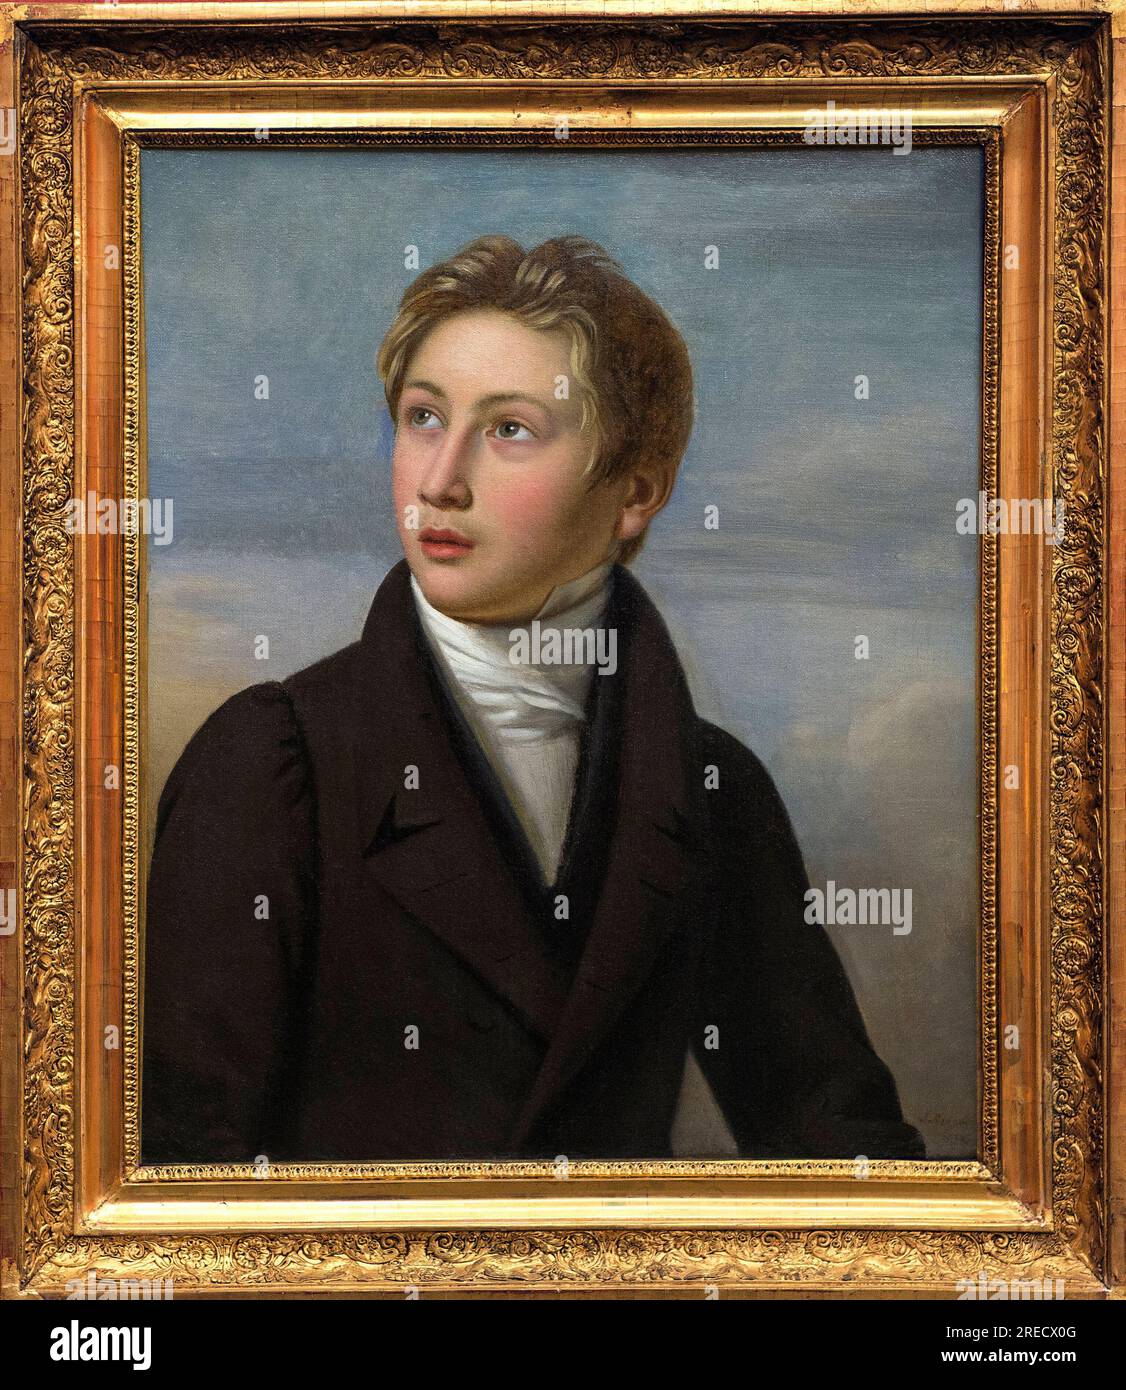 Le Portrait de Liszt enfant - Porträt de Franz Liszt (1811-1886), par Jean Vignaud (1775-1826) en 1826 - Musée des Beaux-Arts de Nimes Stockfoto